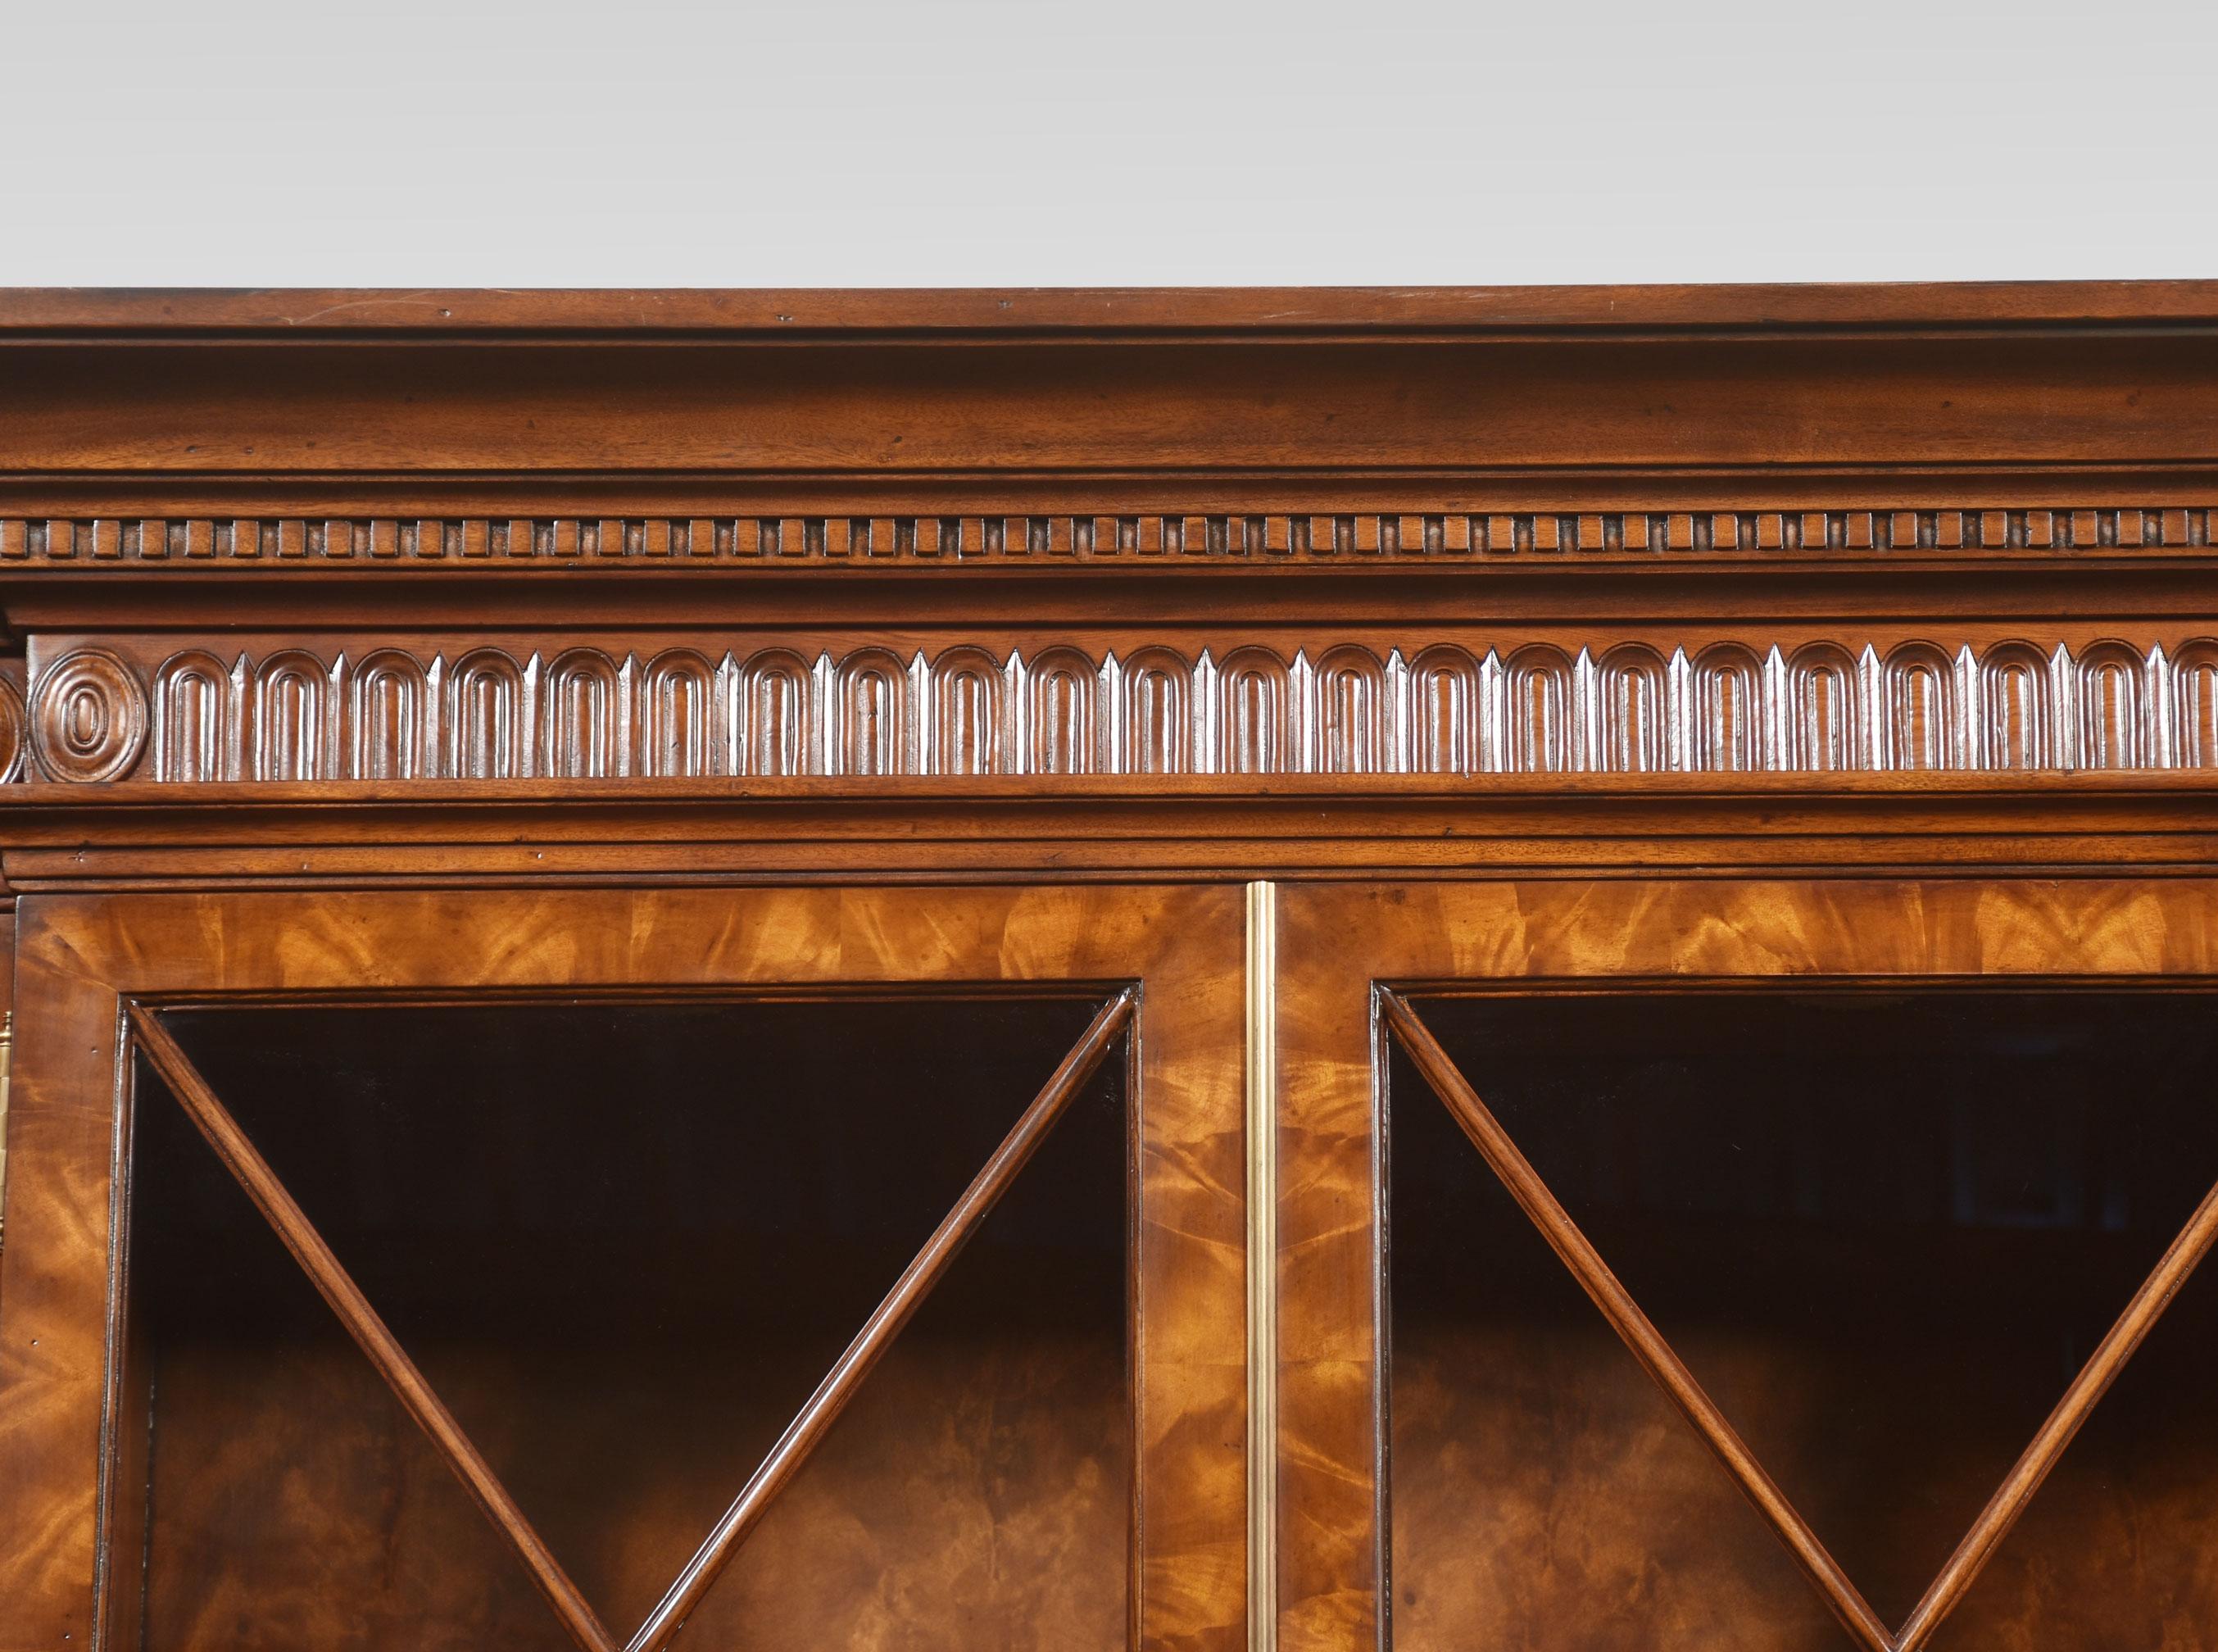 Großes Bücherregal aus Mahagoni im George-III-Stil, vor dem vorspringendes geschnitztes Gesims über vier großen, gut geformten, astragal glasierten Türen, die sich öffnen und ein verstellbares Regal öffnen lassen. Der Sockel ist mit einem Paar